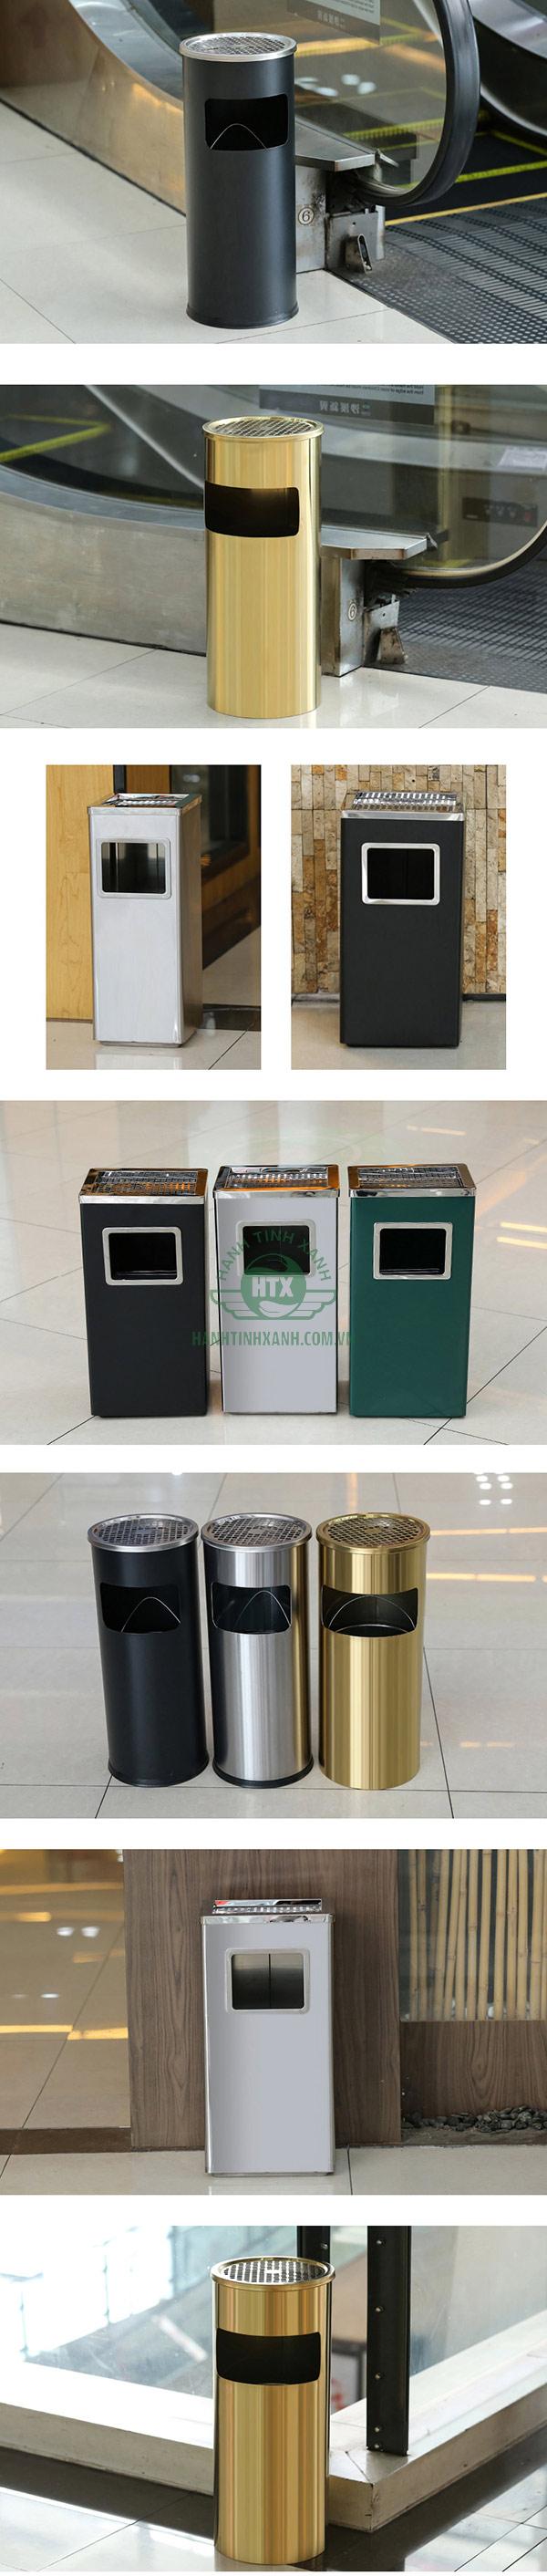 Những mẫu thùng rác inox dành cho khu vực hành lang